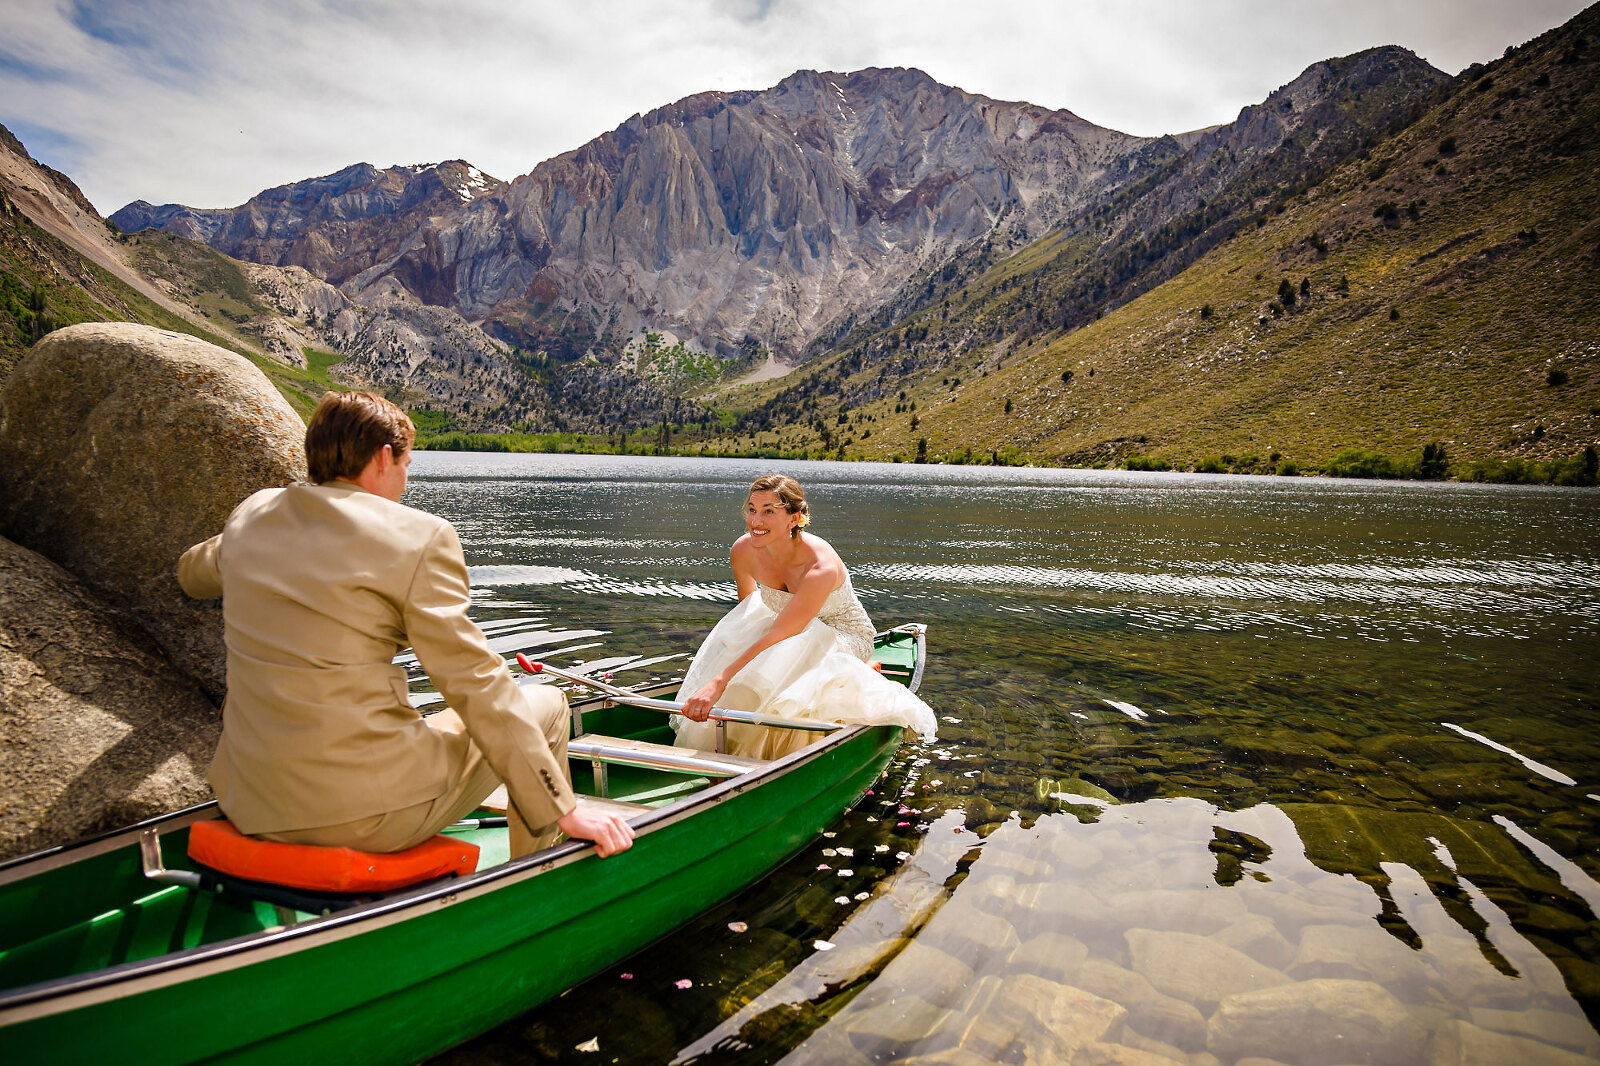 Wedding couple boating on mountain lake